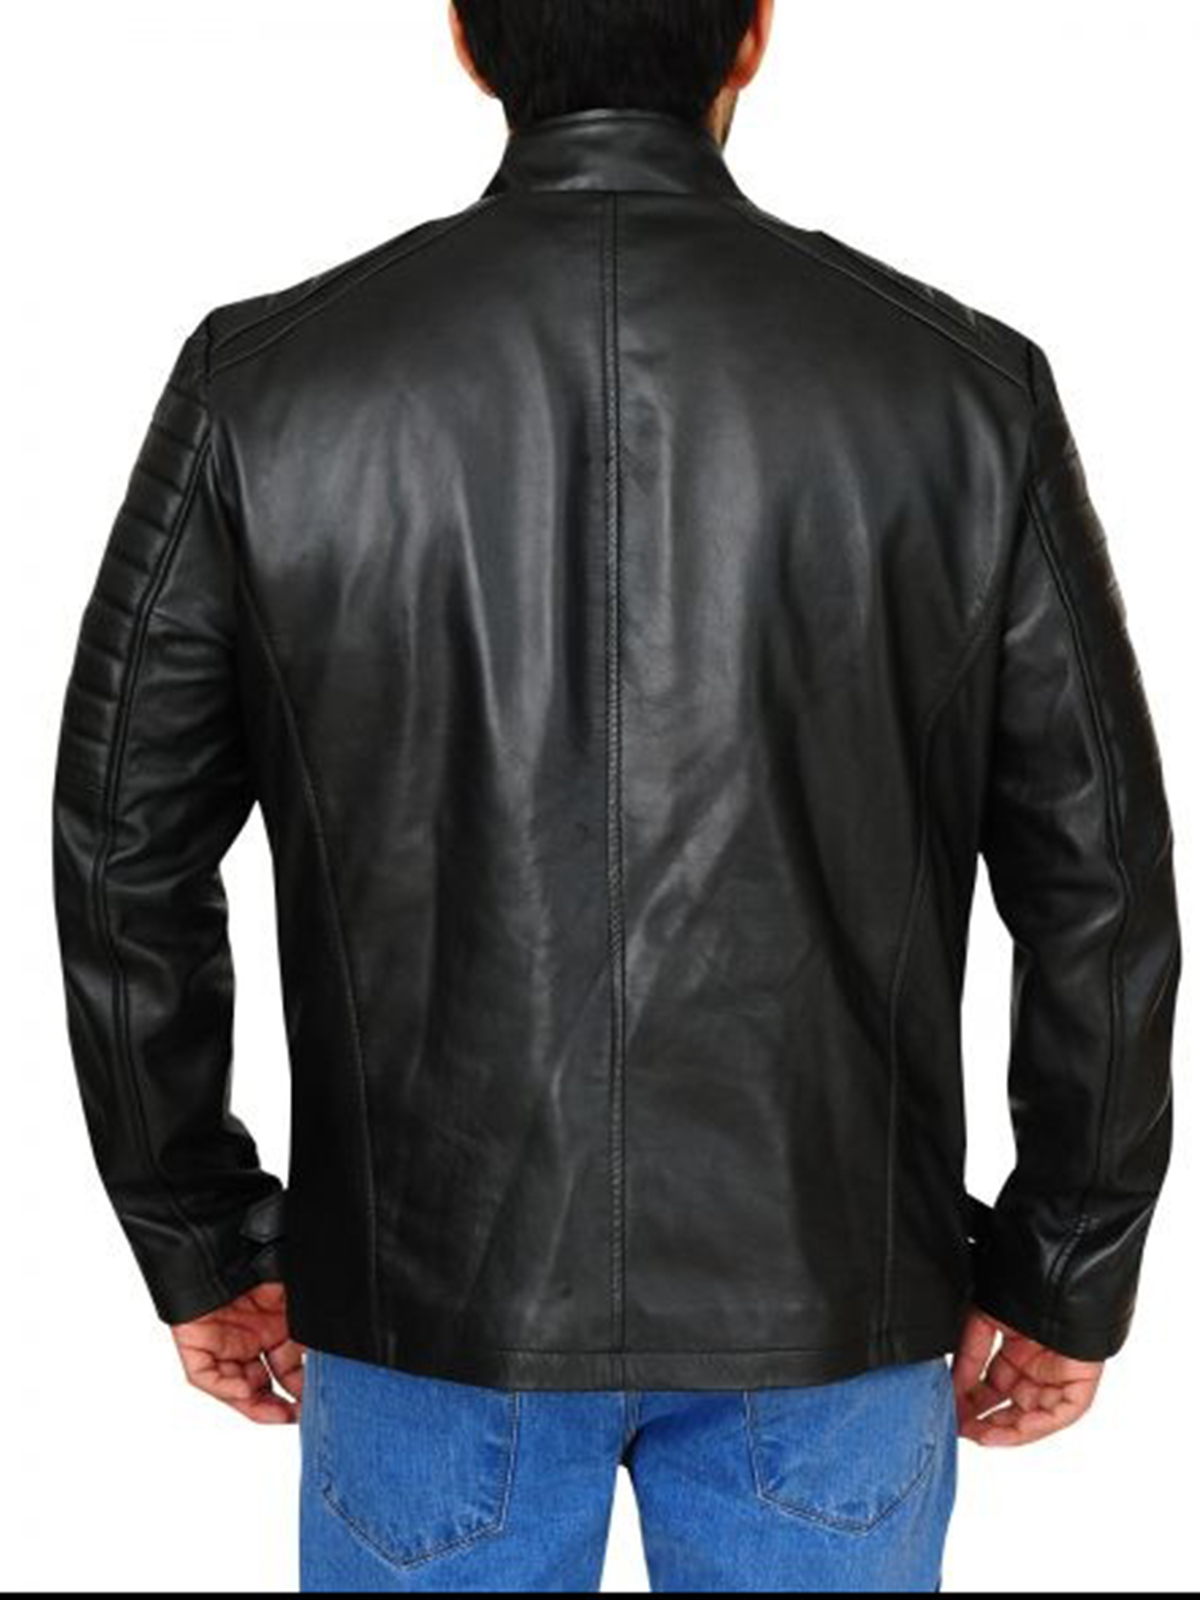 Deadpool Ed Skrein Black Leather Jacket